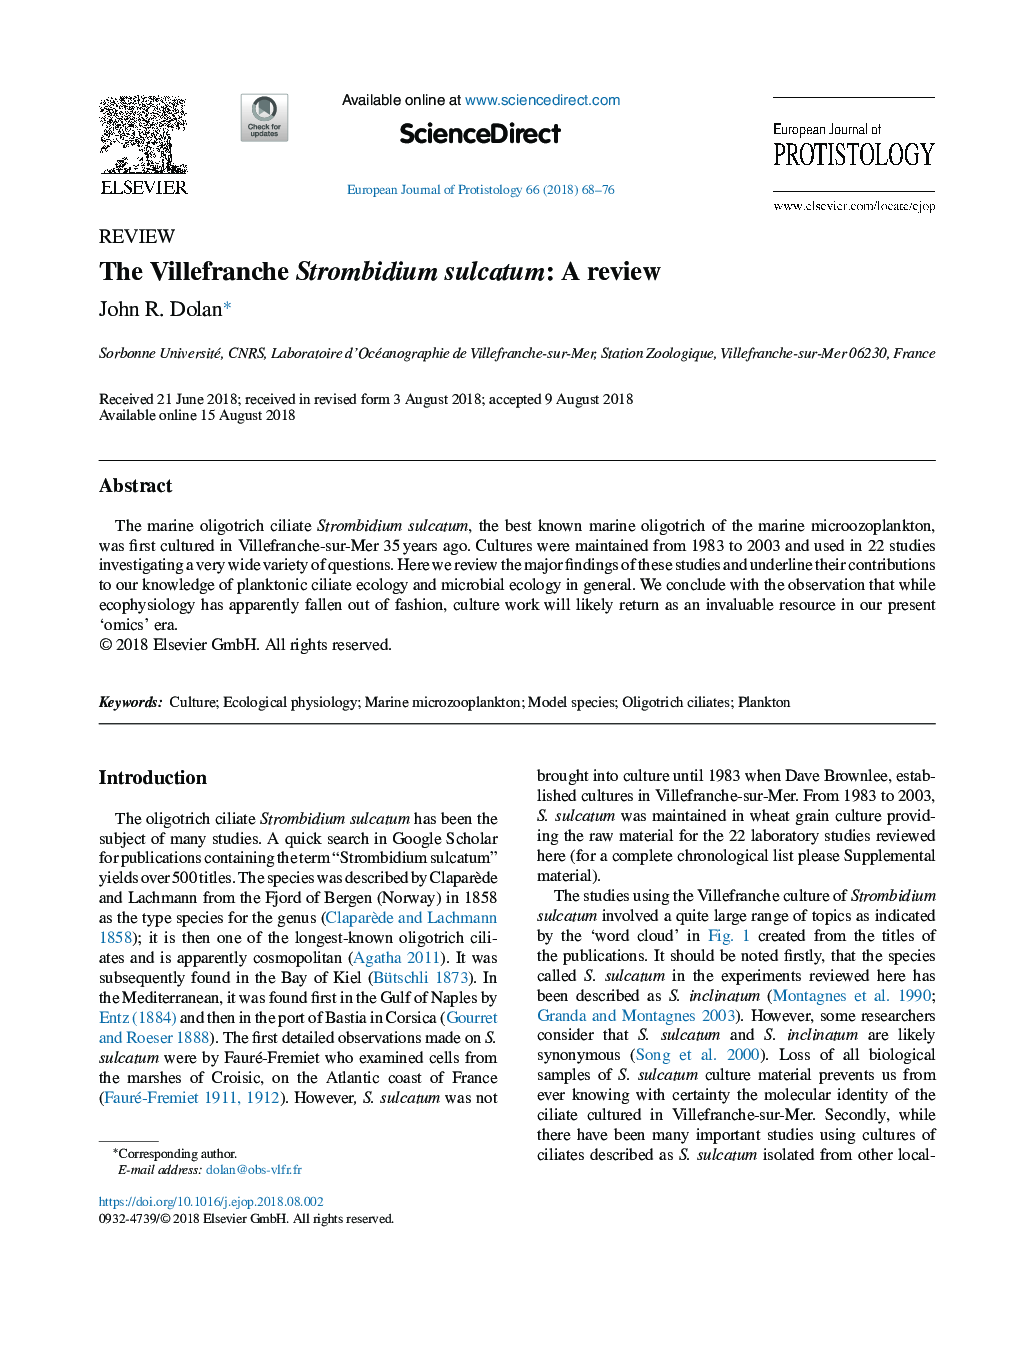 The Villefranche Strombidium sulcatum: A review